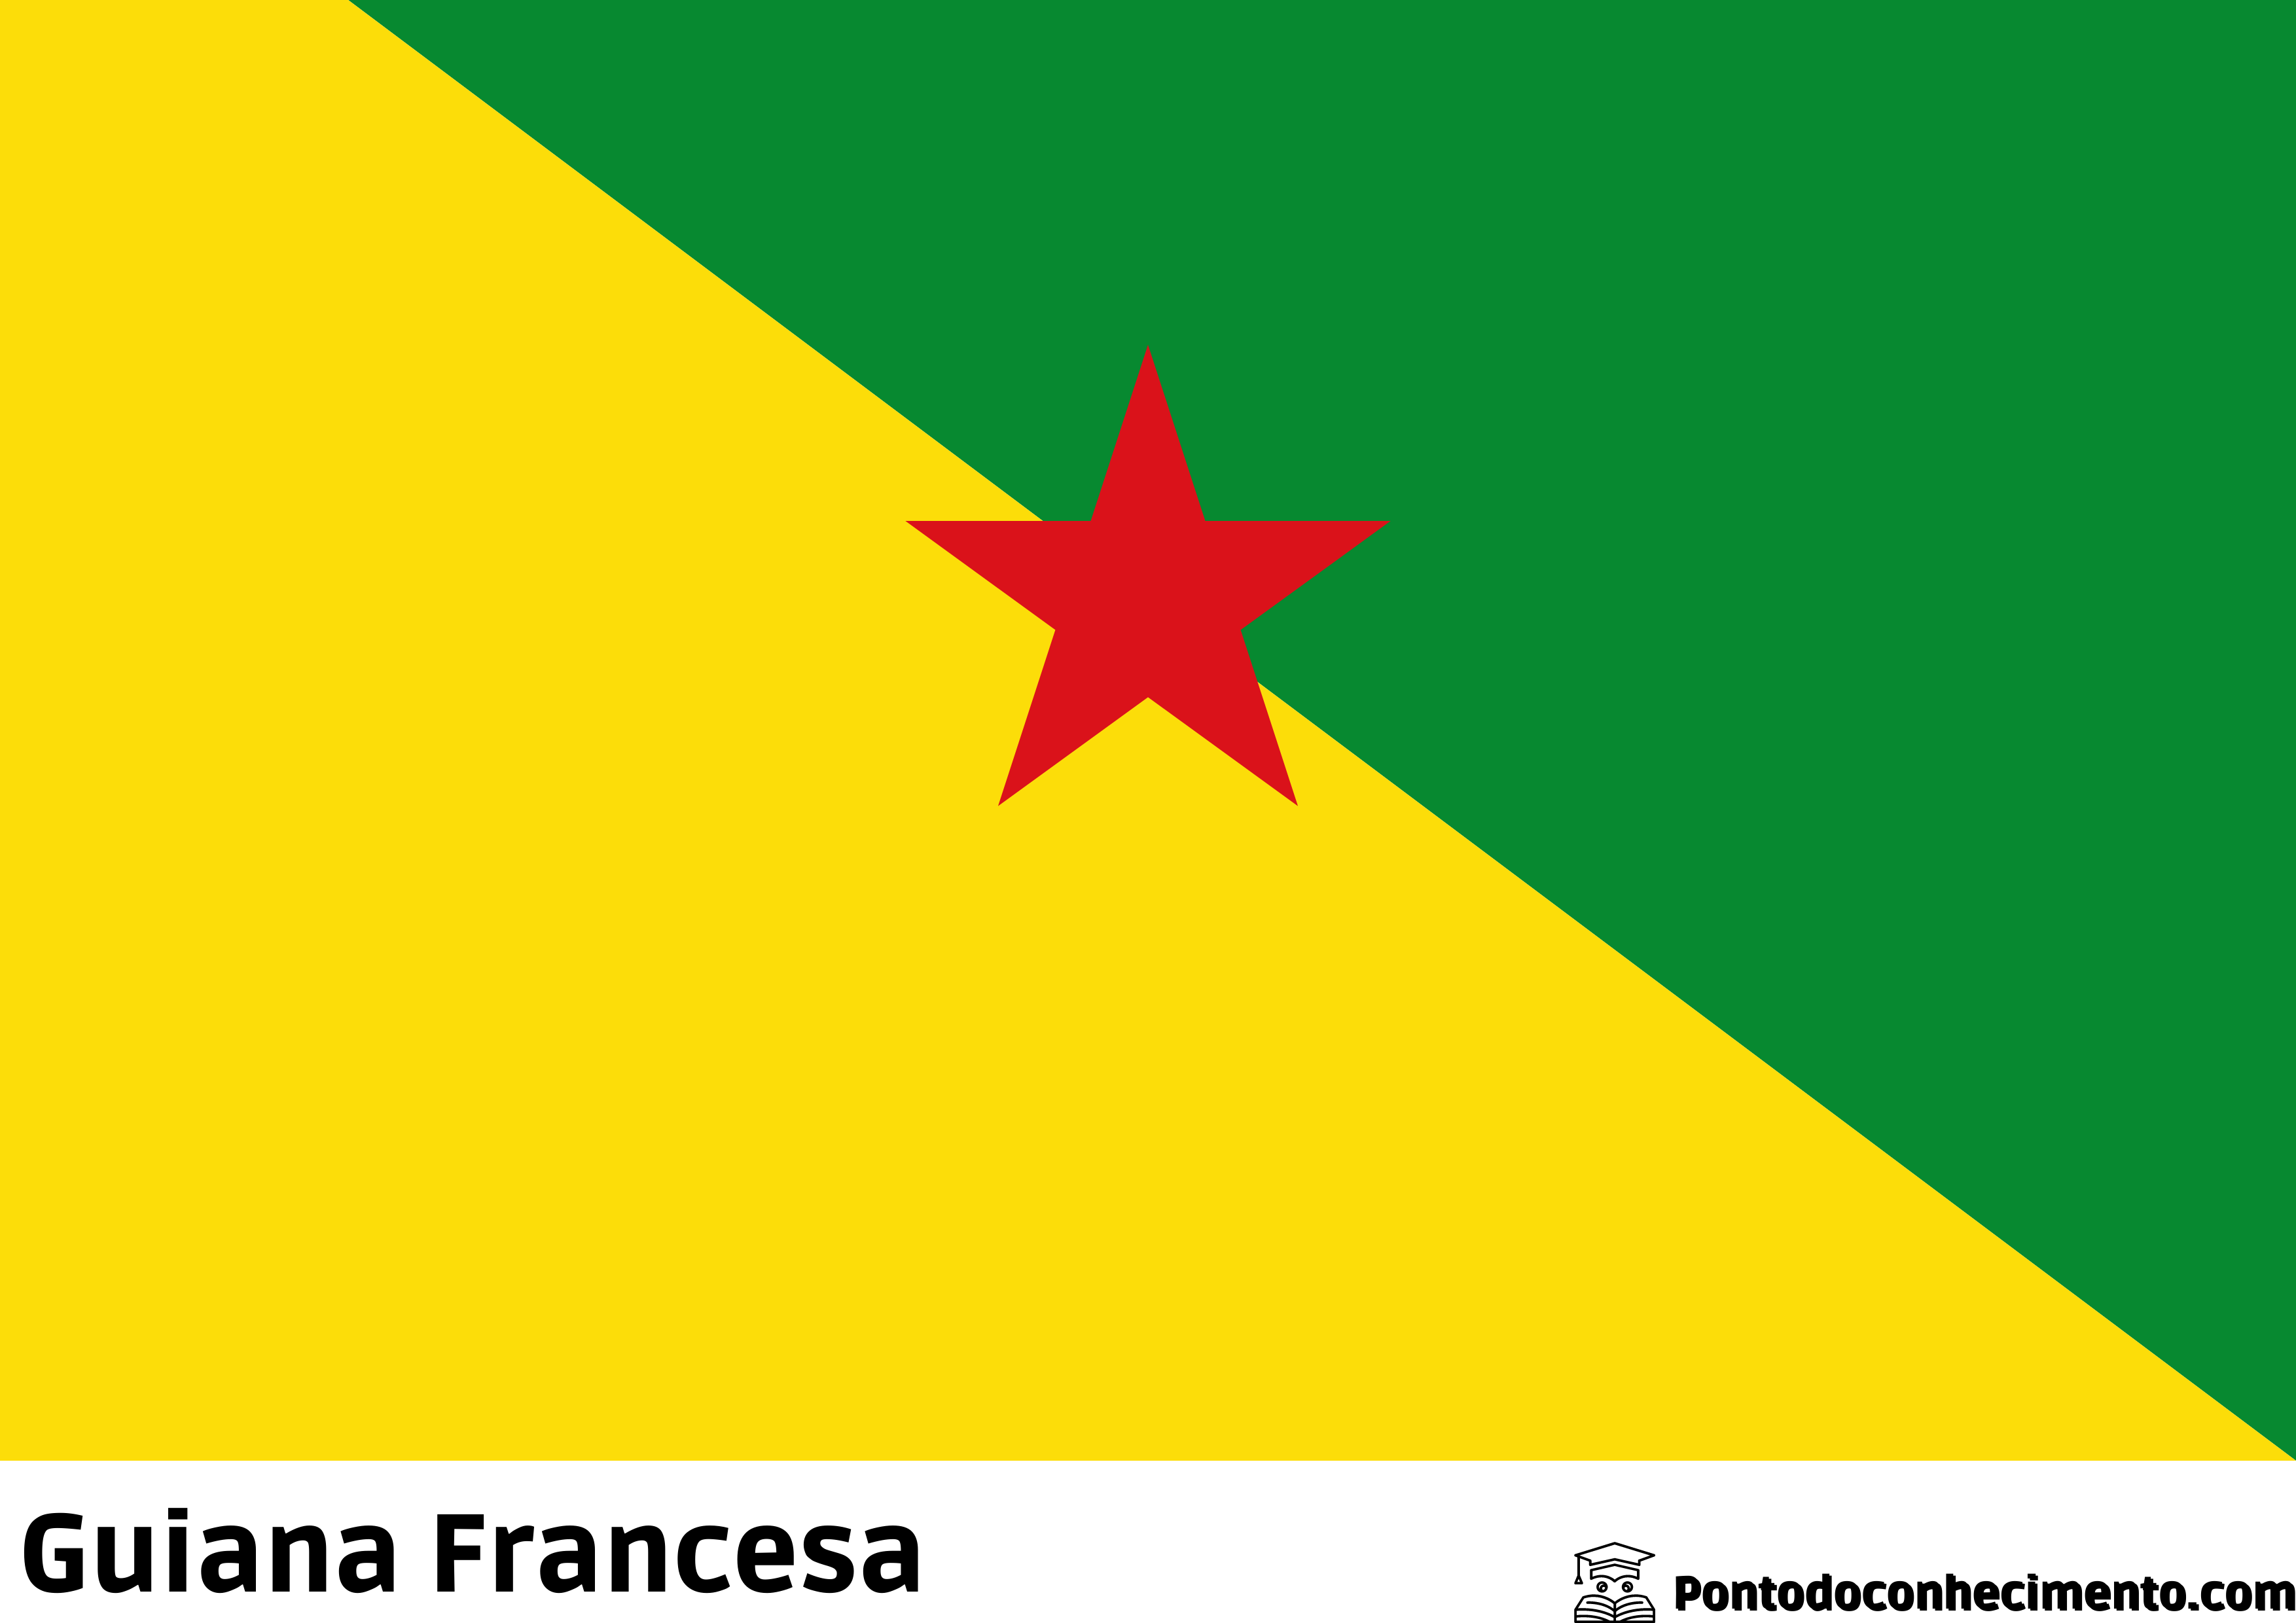 Guiana Francesa (território ultramarino da França)